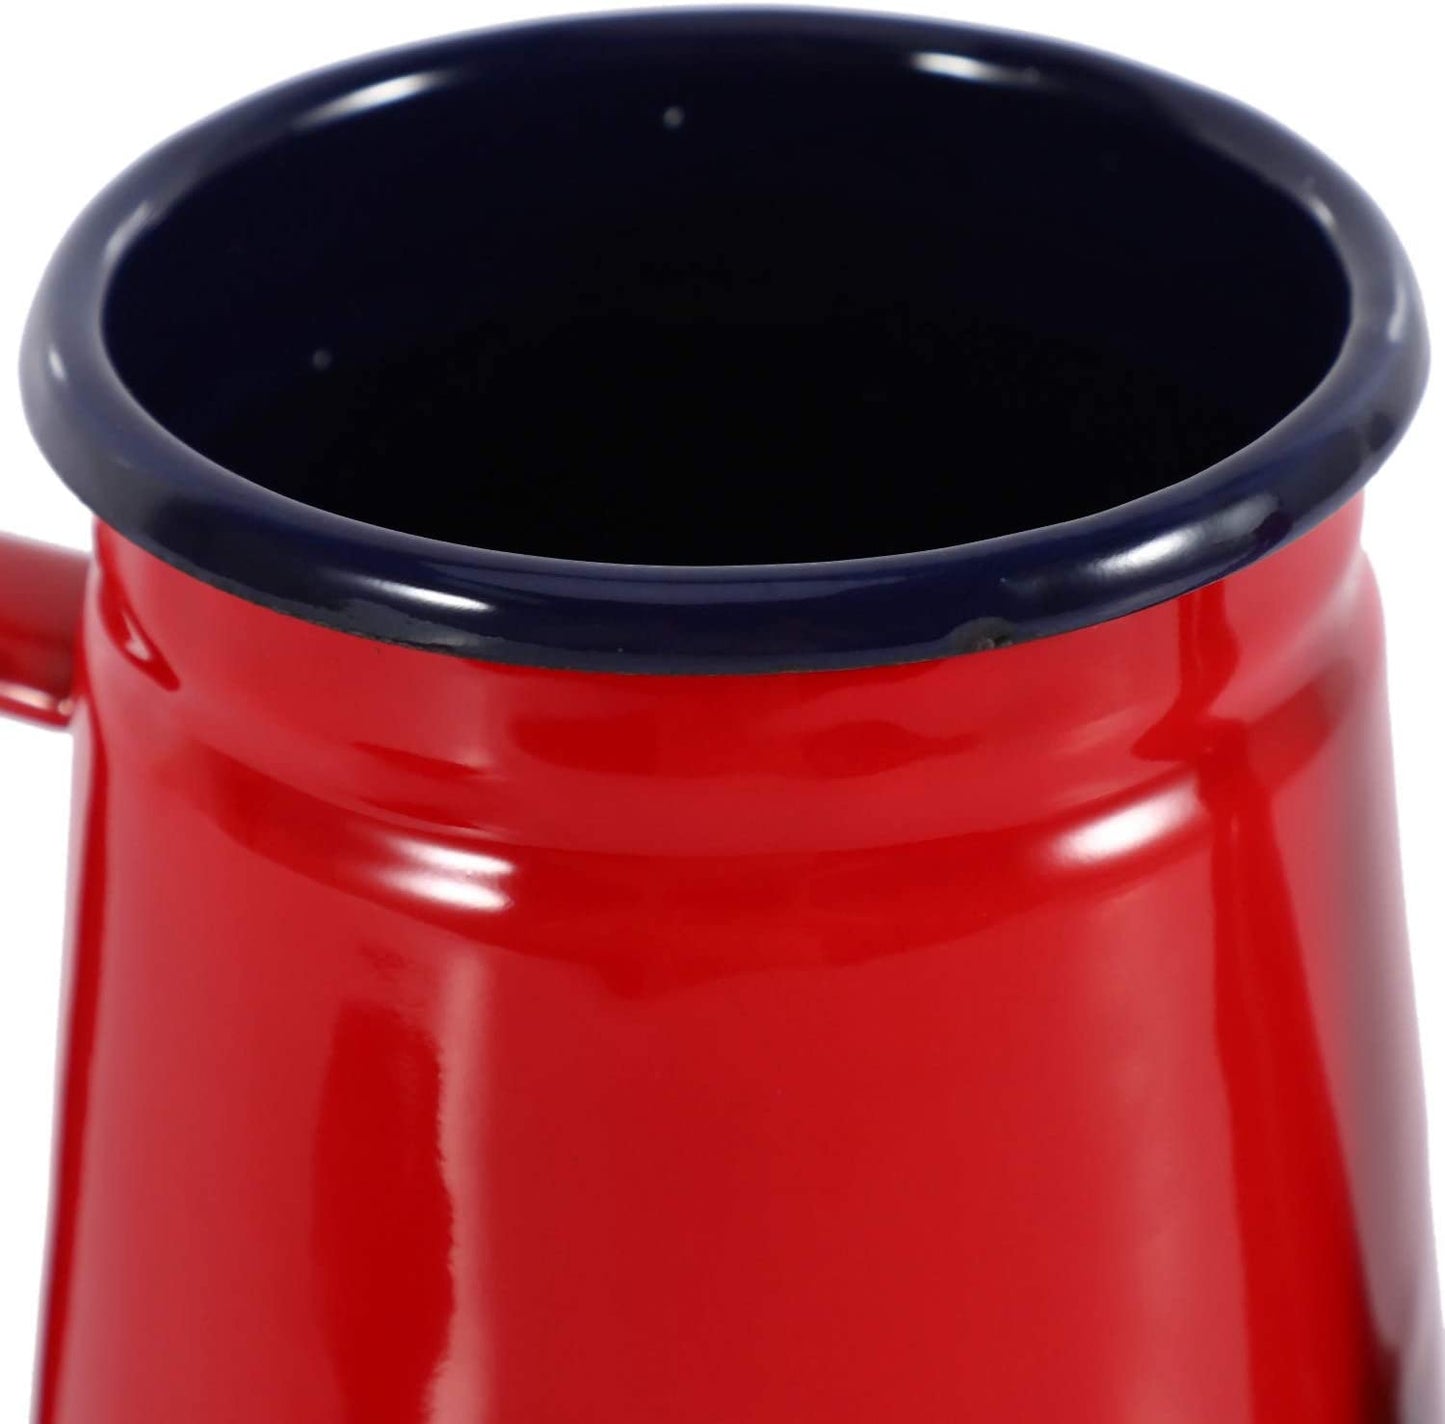 TOPONE 1.1L Emaille Kaffeekanne Hand Tee Wasserkocher Induktion skocher Gasherd Universal